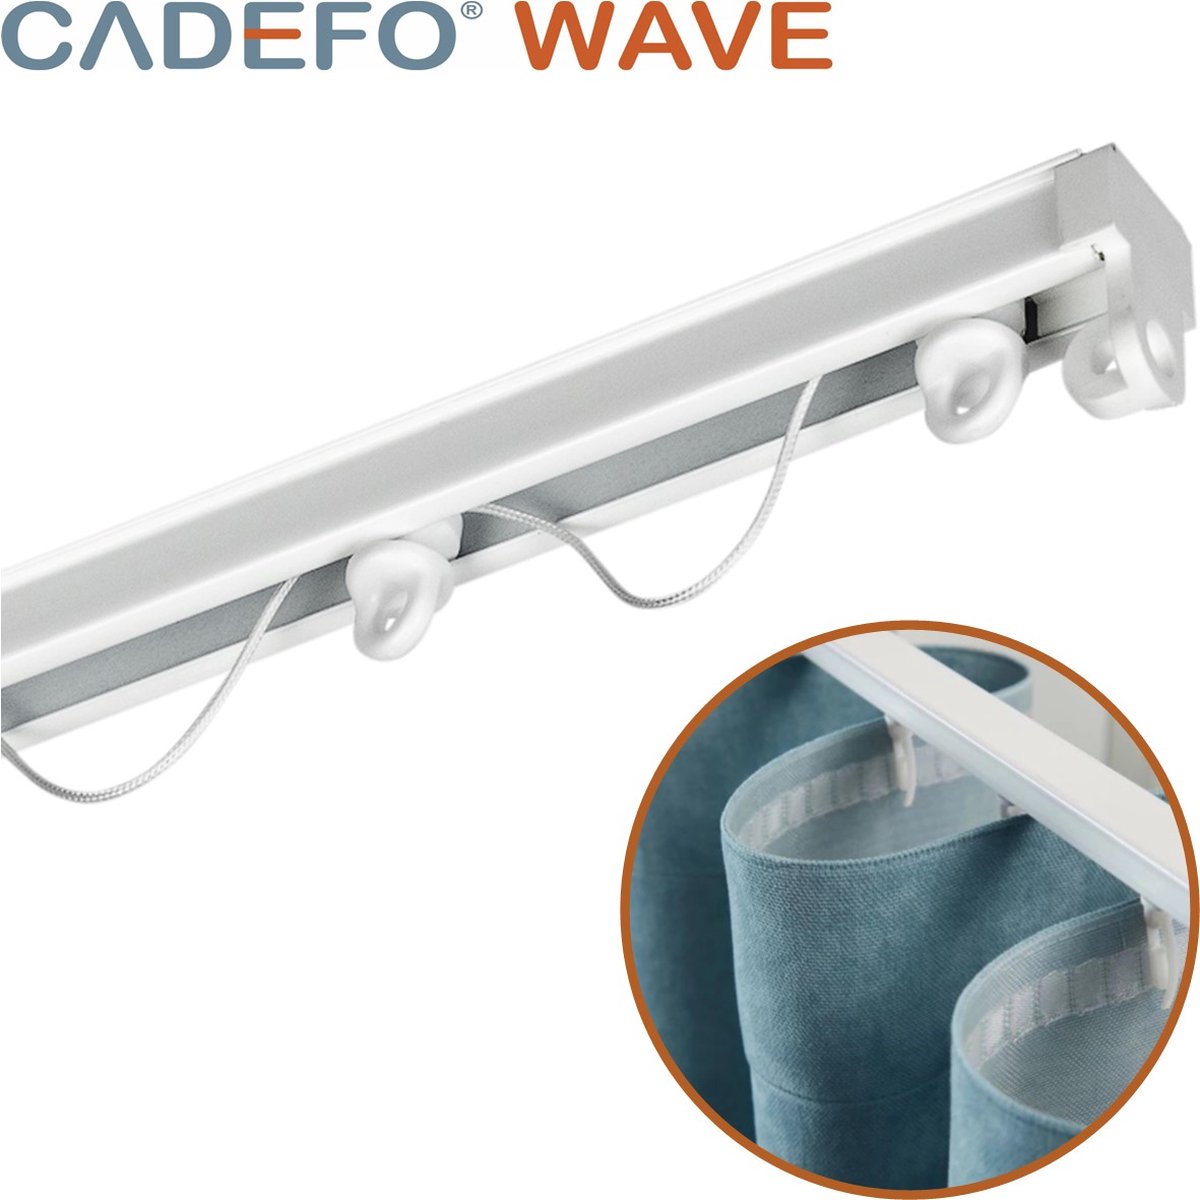 CADEFO WAVE (151 - 200 cm) Gordijnrails - Compleet op maat! - UIT 1 STUK - Leverbaar tot 6 meter - Plafondbevestiging - Lengte 189 cm